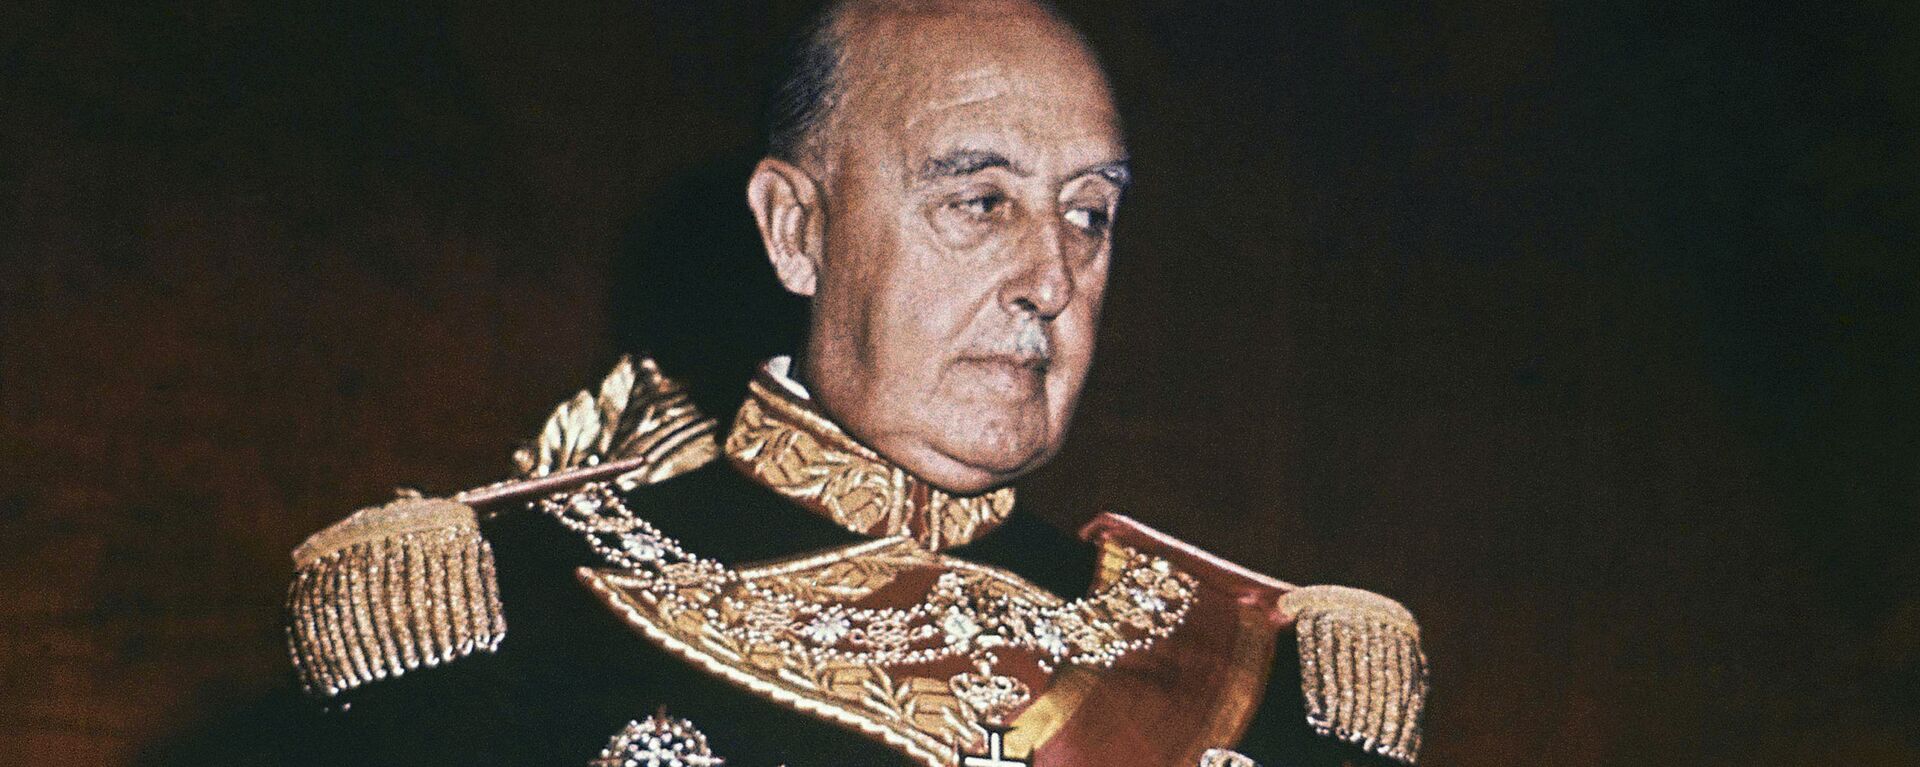 Francisco Franco, dictador español  - Sputnik Mundo, 1920, 21.09.2021